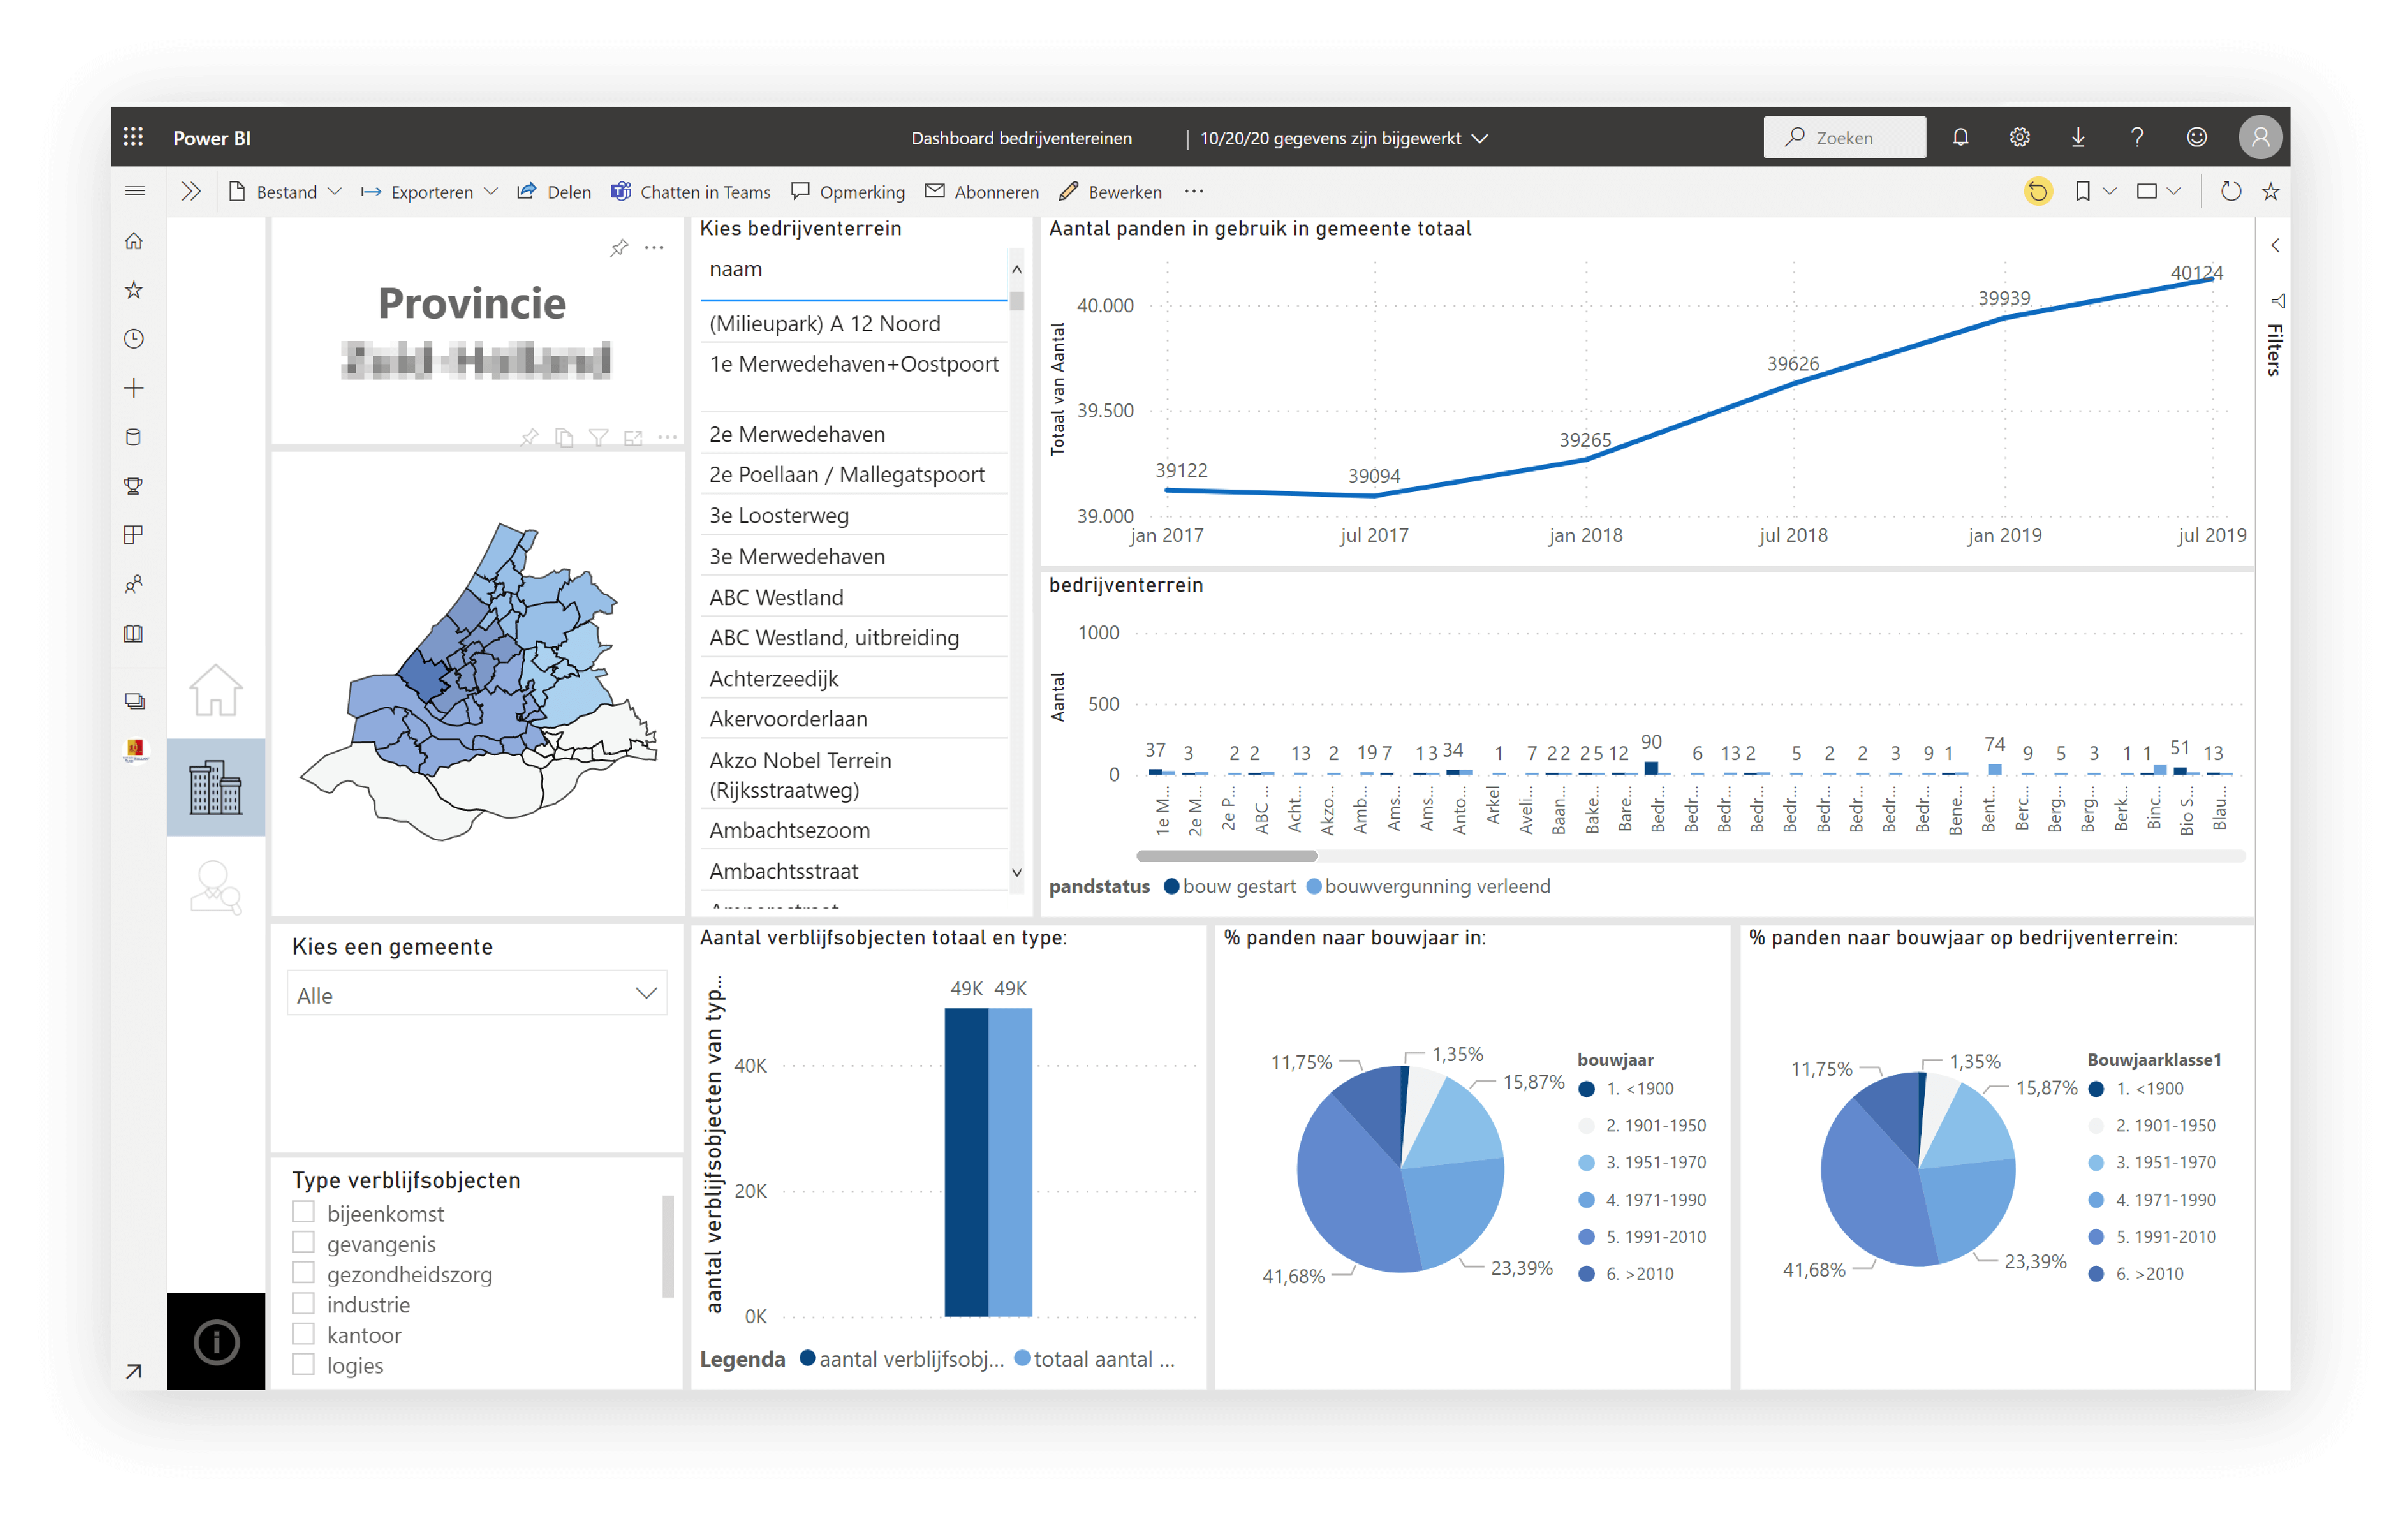 Voorbeeld van een Business Intelligence dashboard ontwikkeld voor een provincie